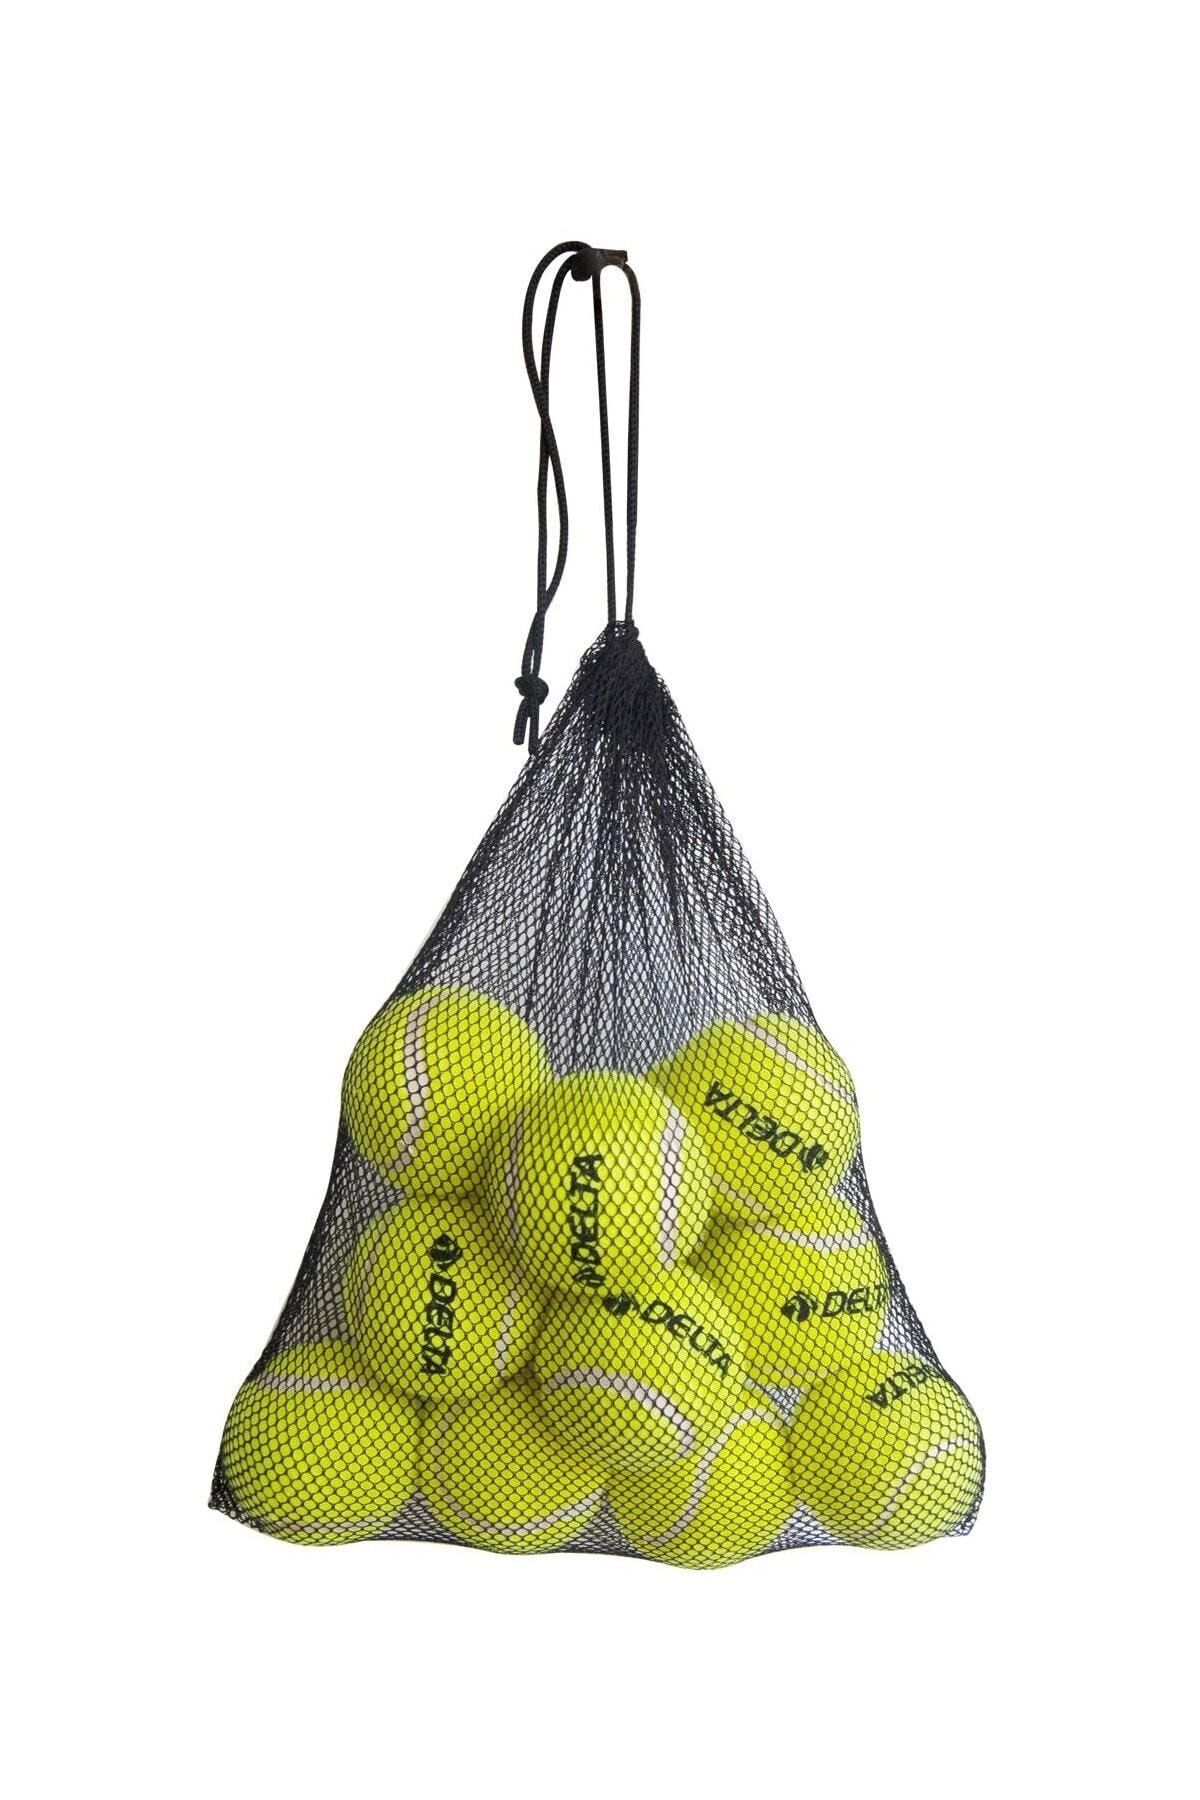 Delta Başlangıç Seviye Özel Filesi Sayesinde Pratik Taşınabilir 12 Adet Antrenman İçin Tenis Topu